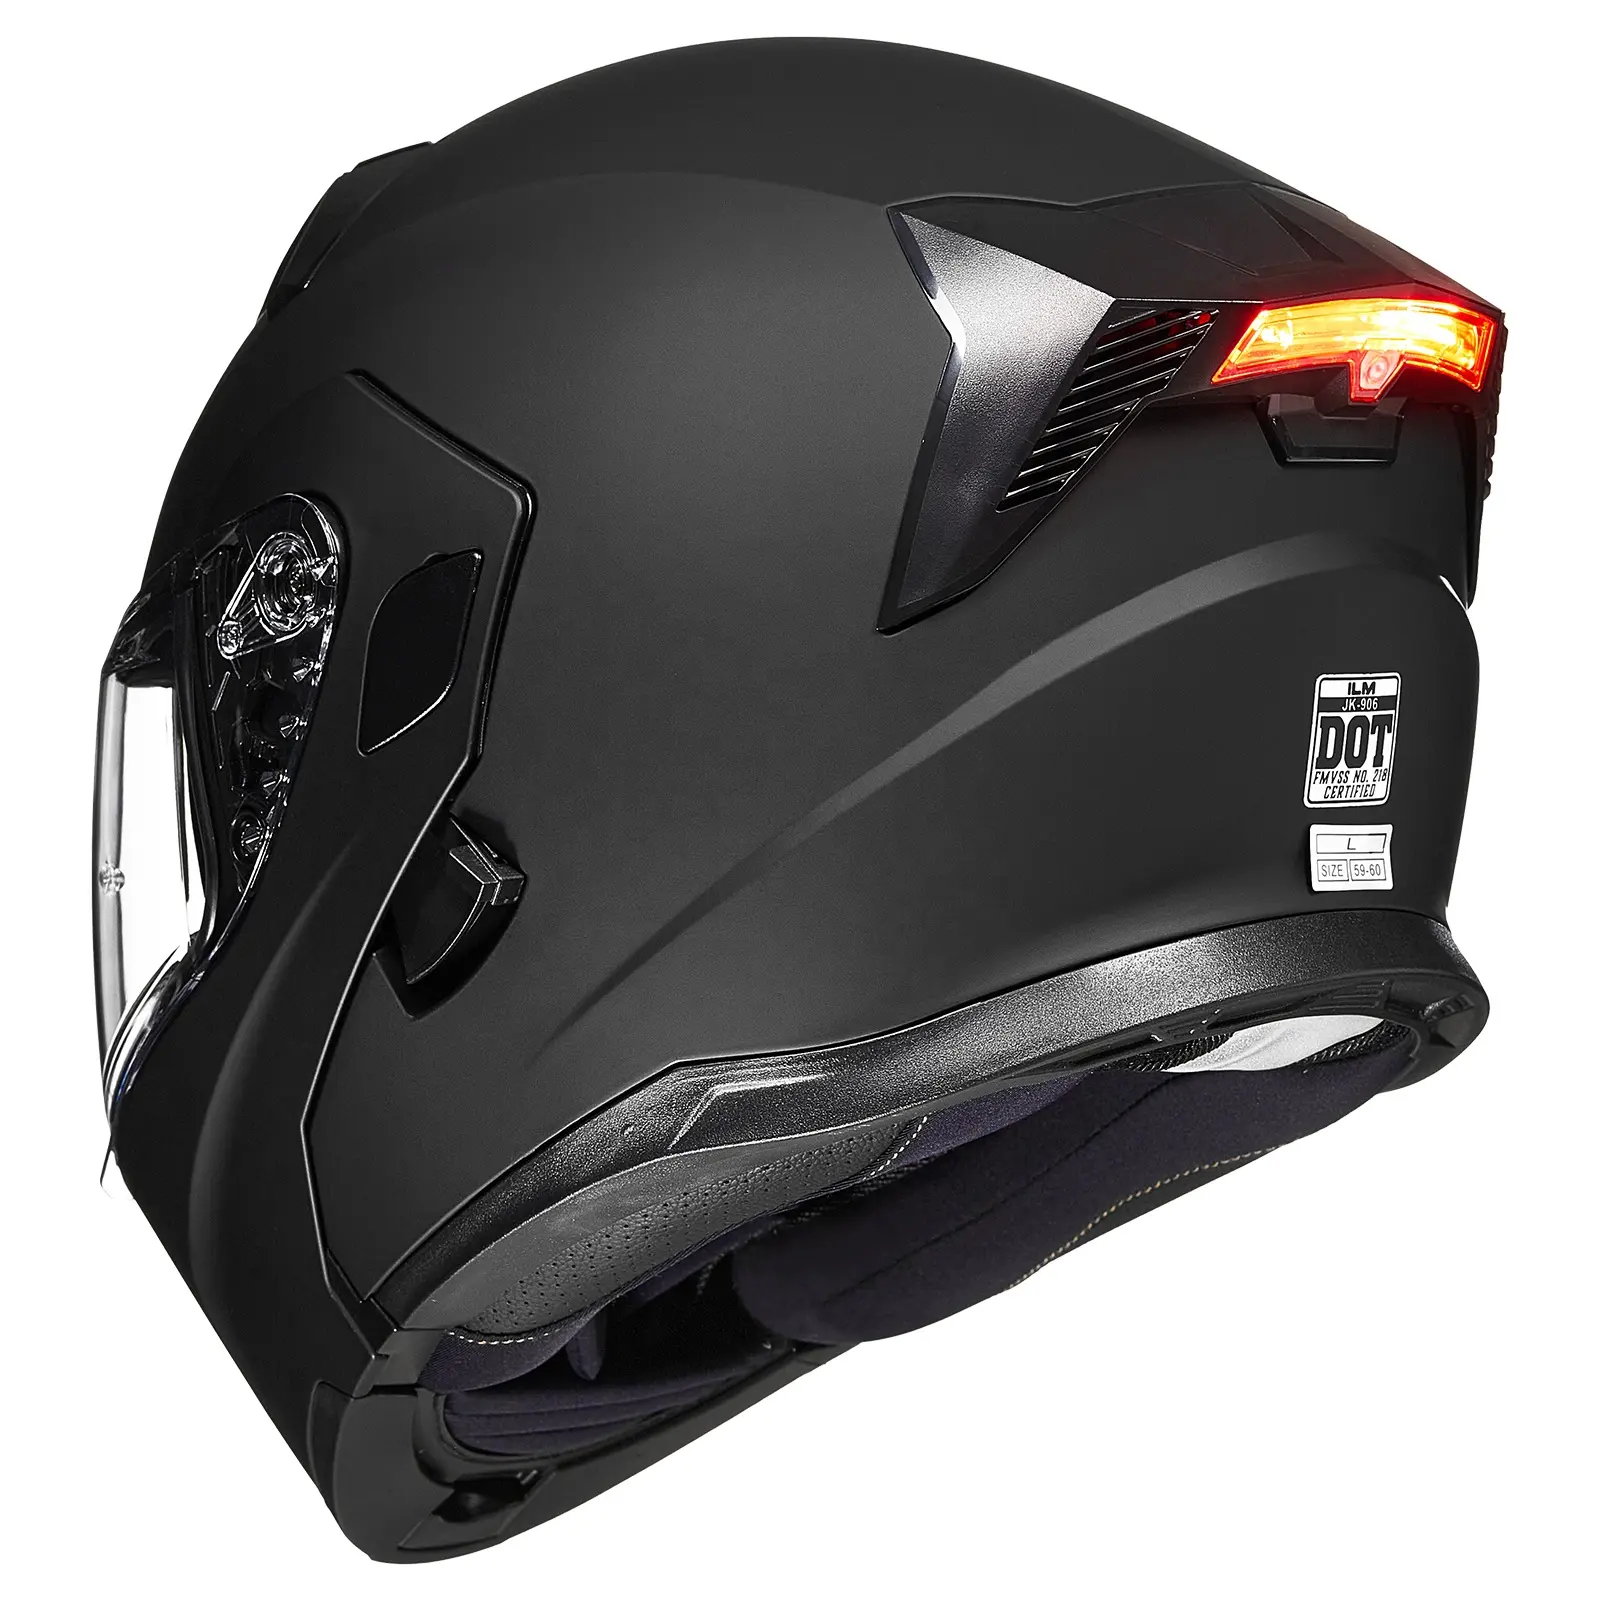 Rekabetçi fiyat üstün kaliteli ILM motosiklet çift vizör yukarı çevirmek modüler kask DOT LED ışık modeli 906L